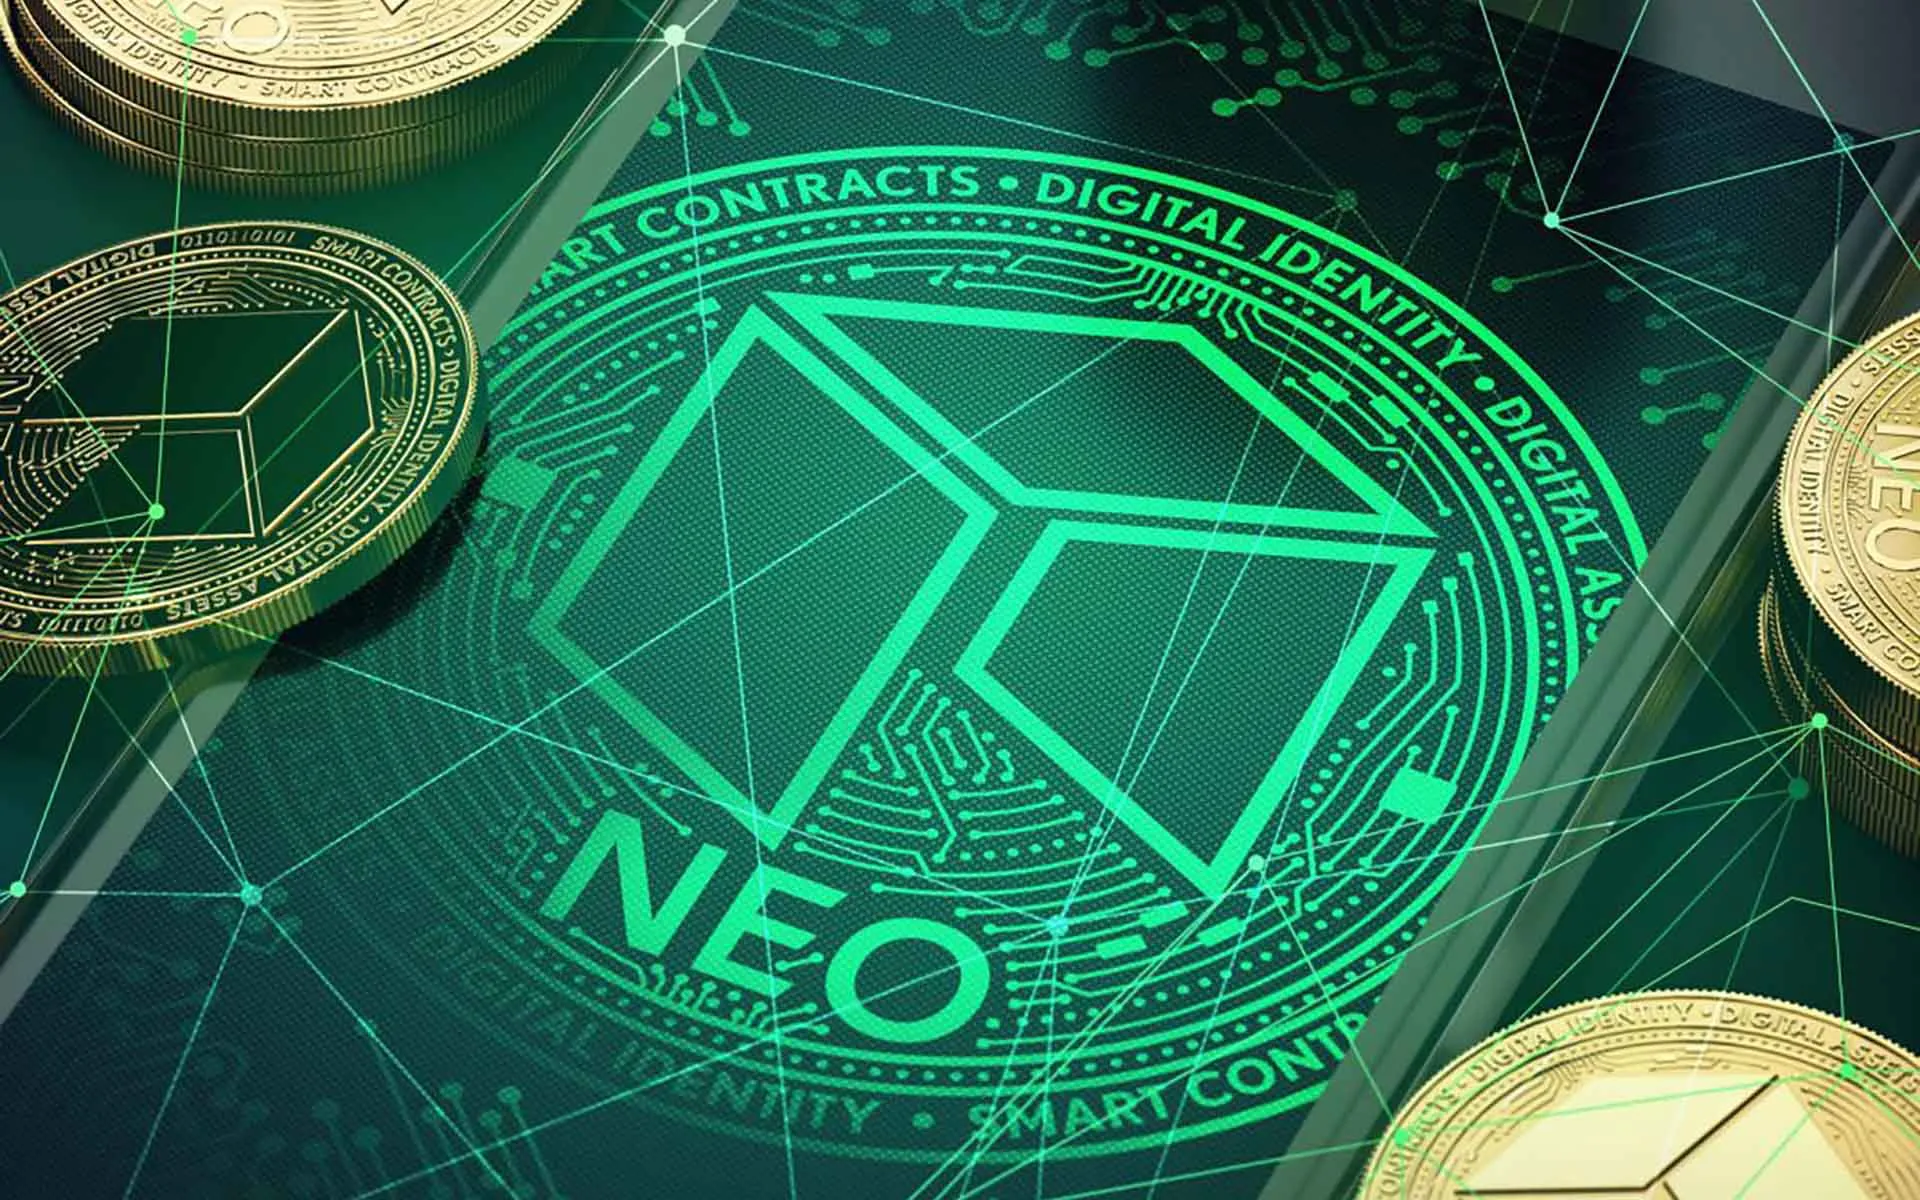 Neo Fiyat Tahmini 2022-2026: NEO Fiyatı 2022 Yılı Sonunda 60 Dolar Olabilir!